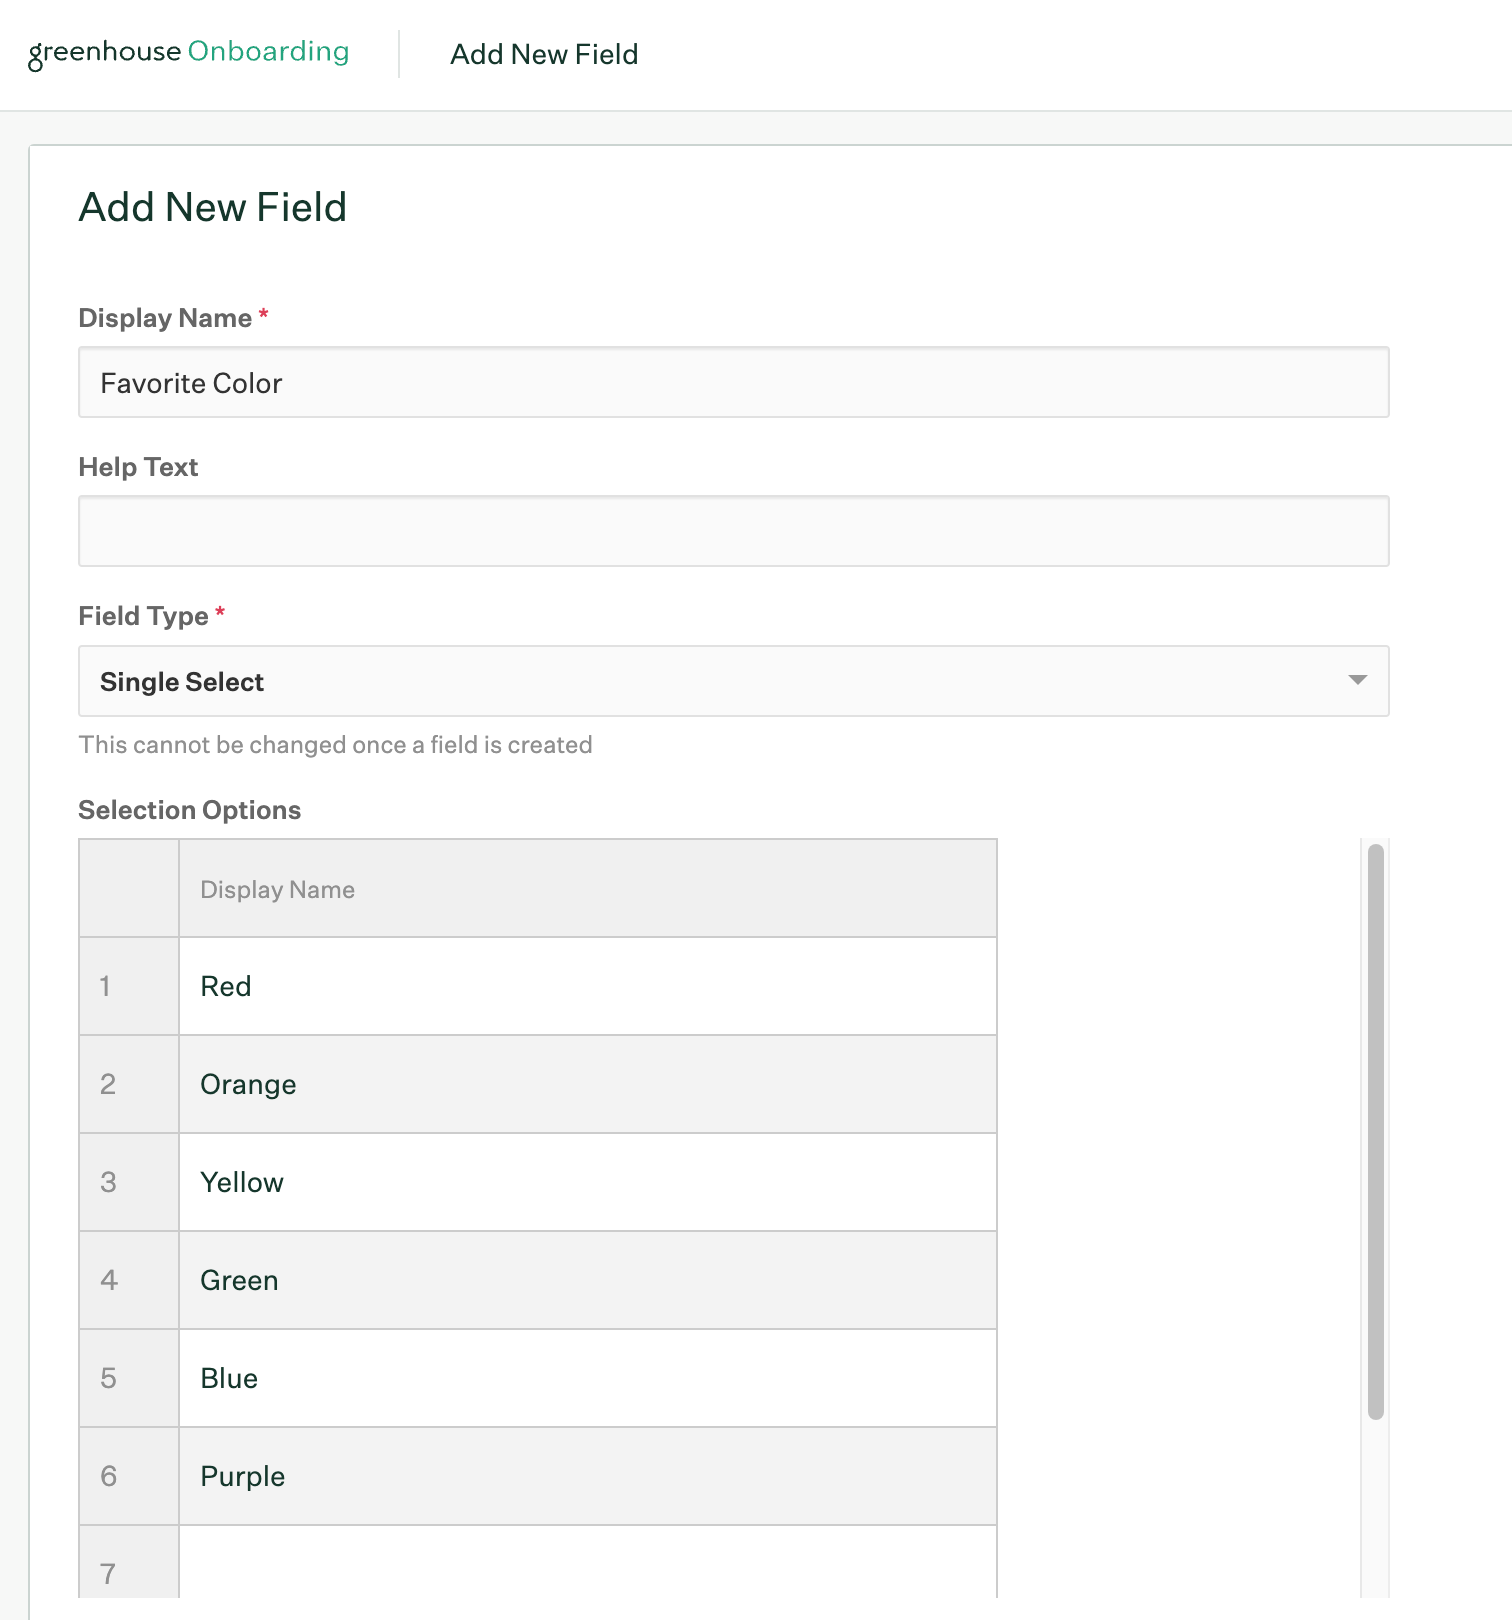 Add new field page in Greenhouse Onboarding Field settings